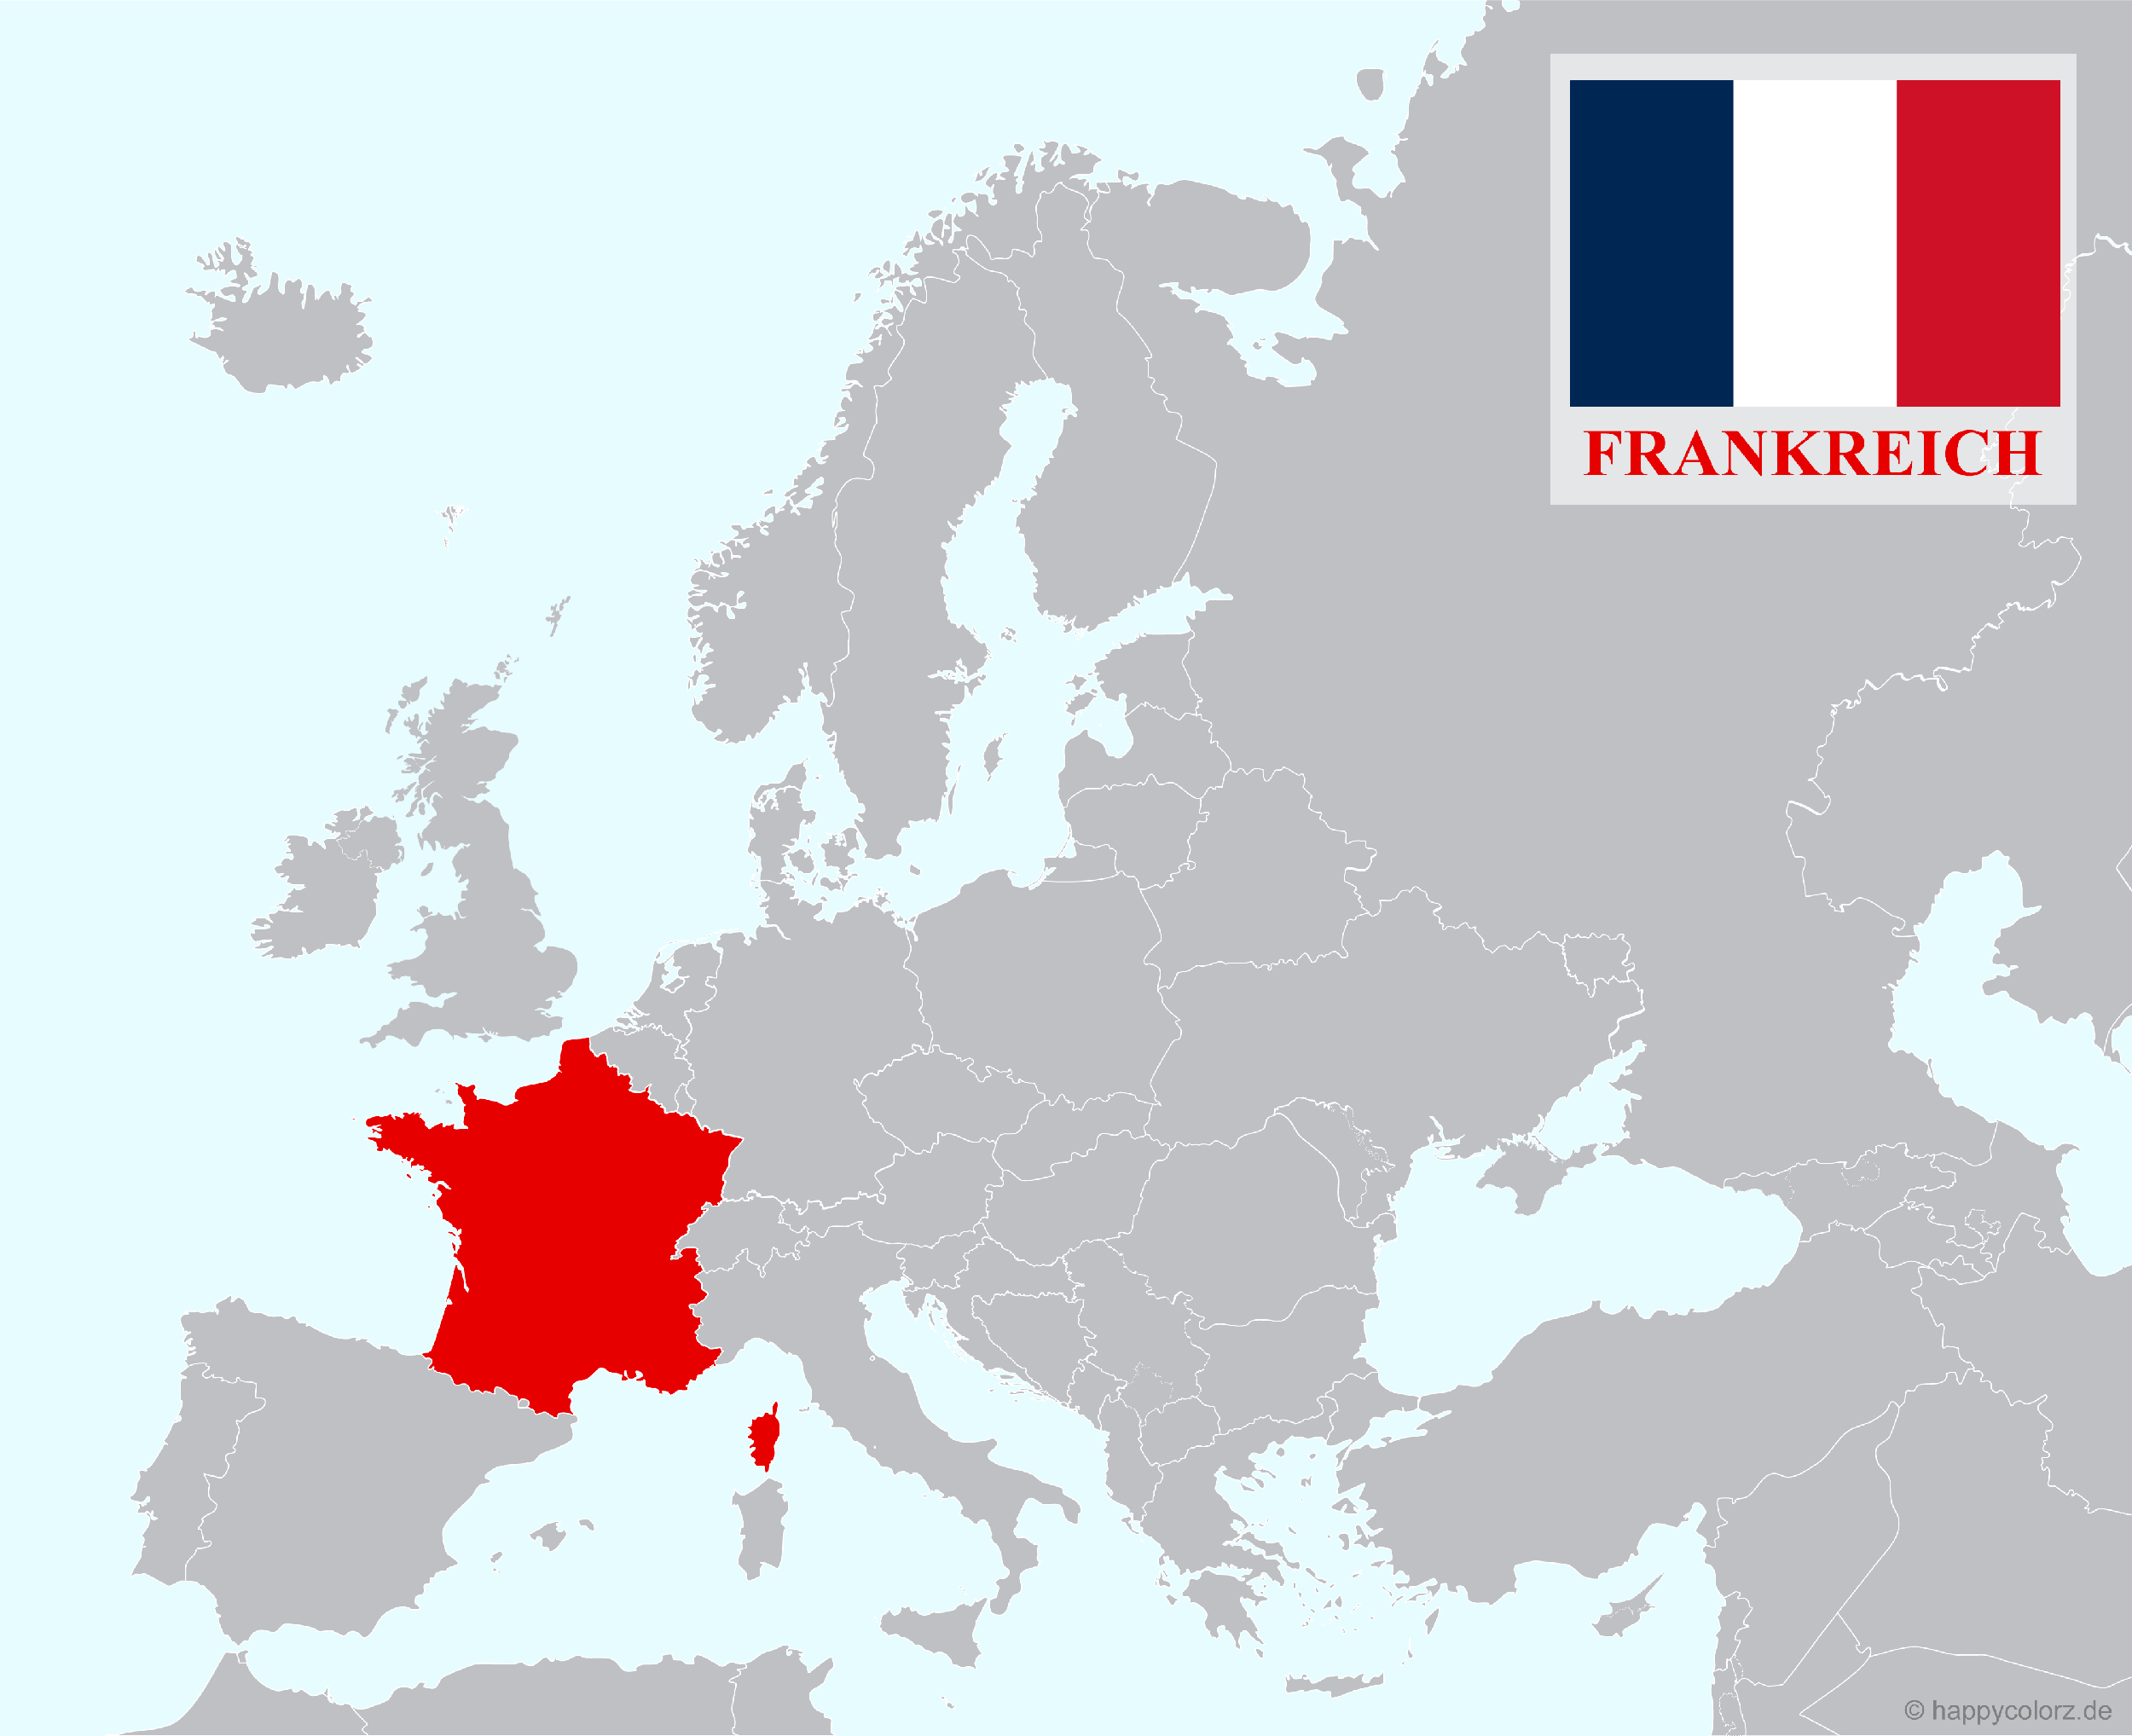 Europakarte mit Frankreich als hervorgehobenes Land